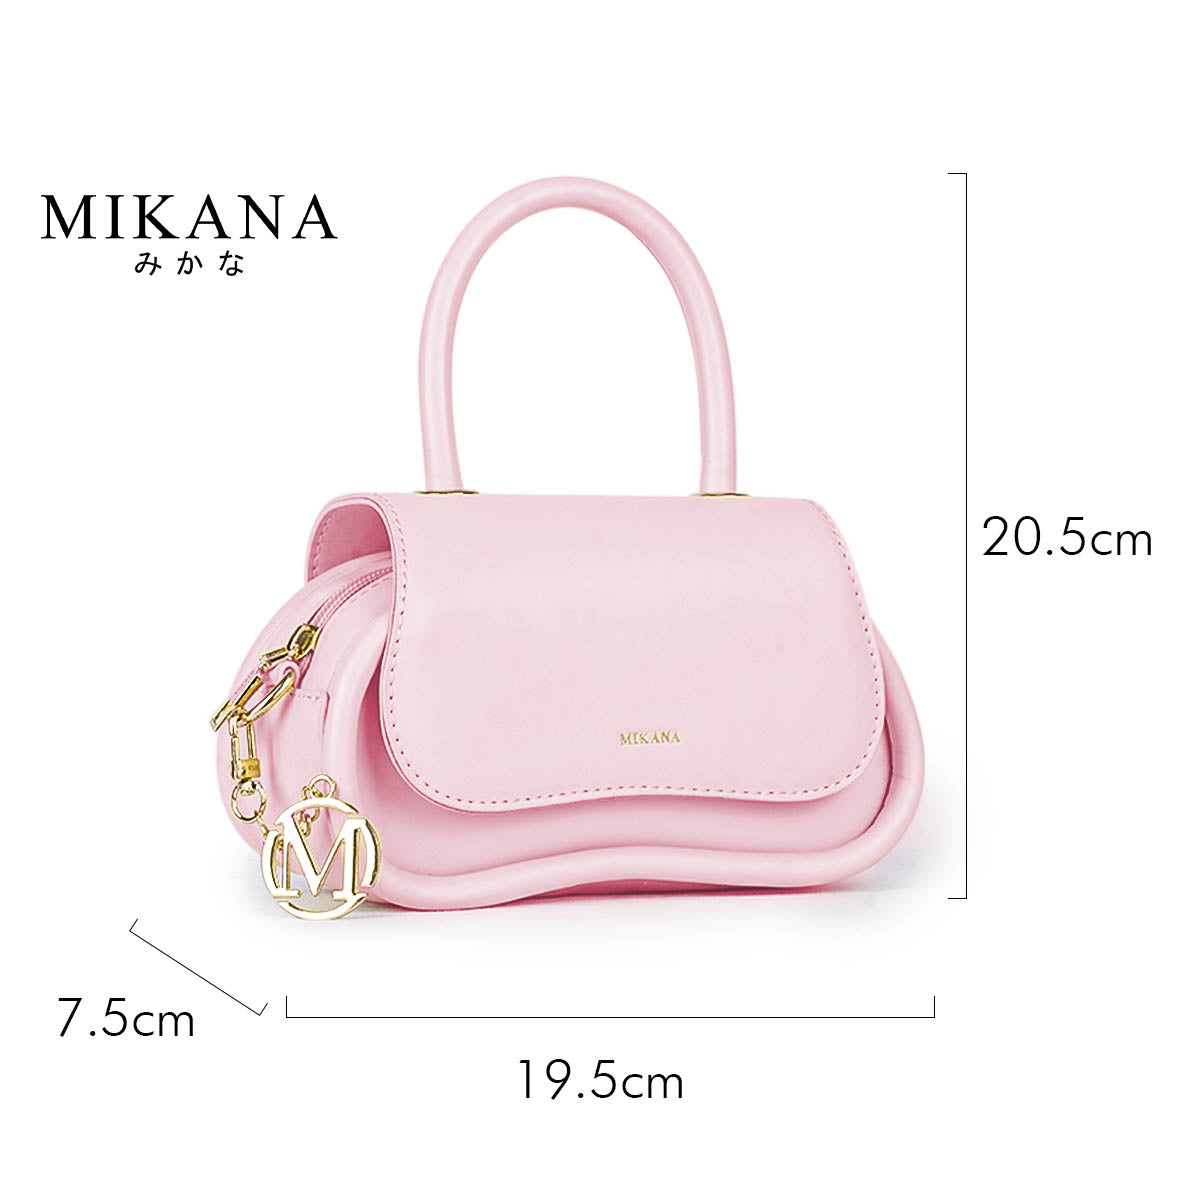 Pastel Dream Shizuka Hand Bag